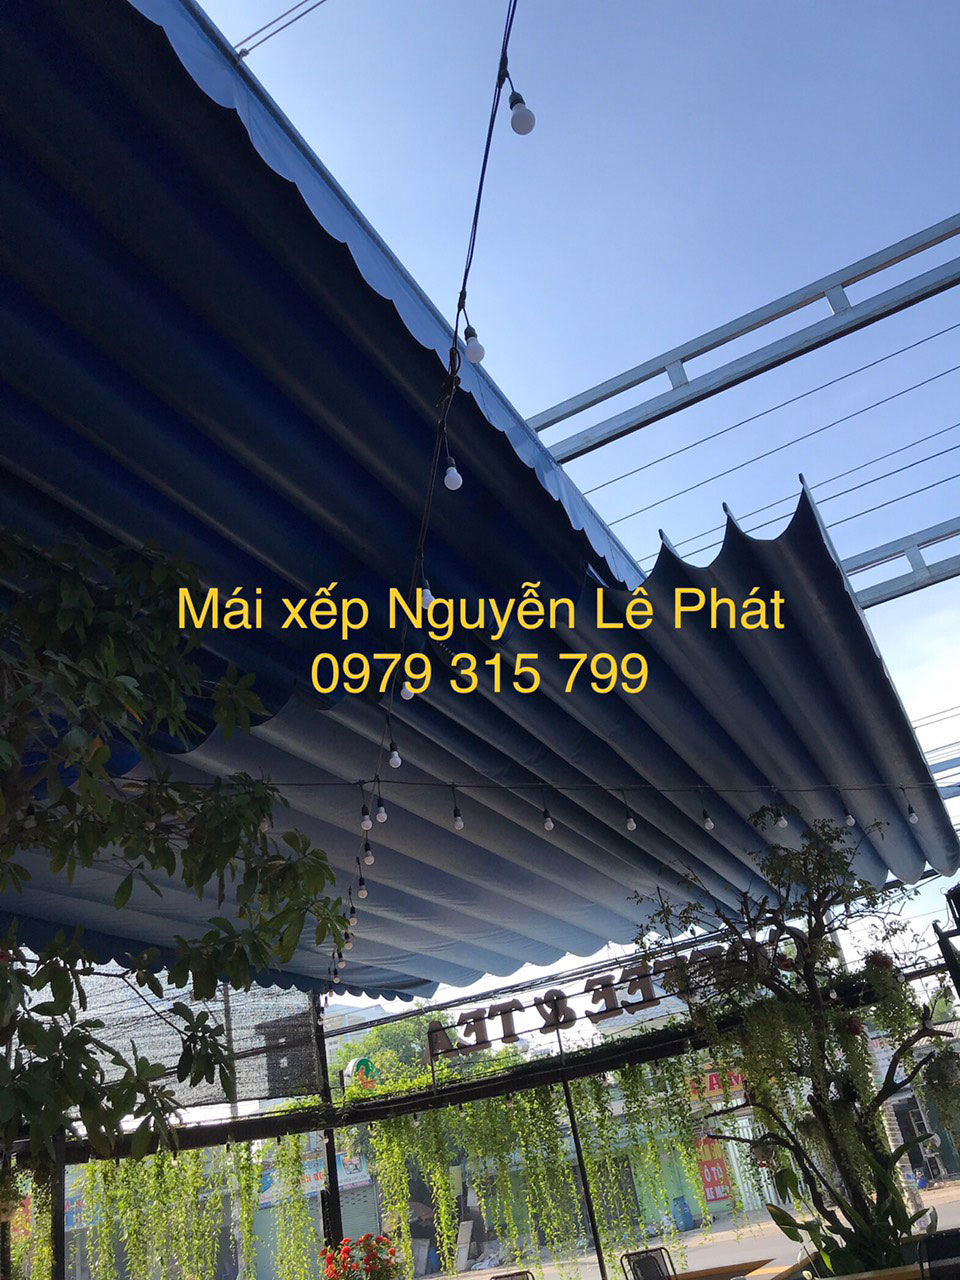 Sửa Chữa Mái Hiên Mái Che Long Thành, Thay Bạt Mái Xếp Lượn Sóng tại Long Thành